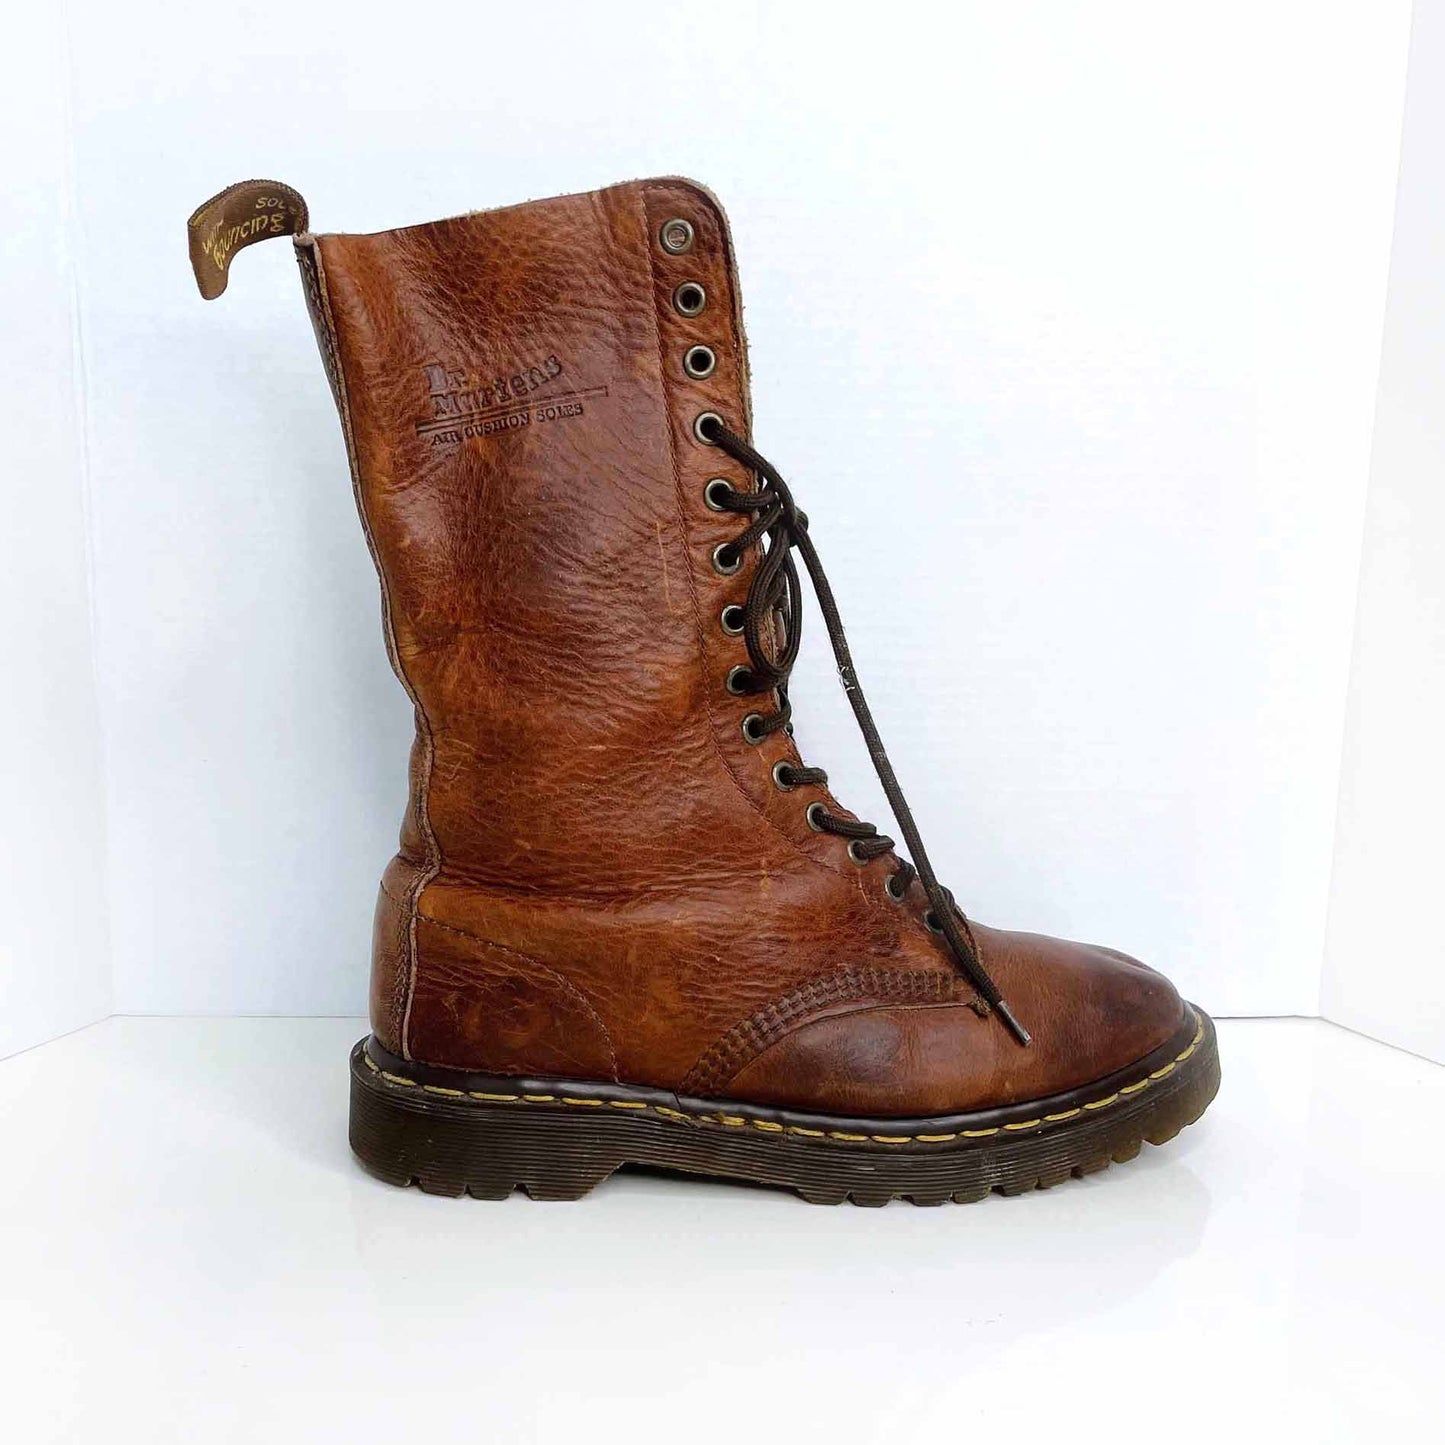 vintage 90's 14 eye original grunge doc martens brown boots - size 7 Men's